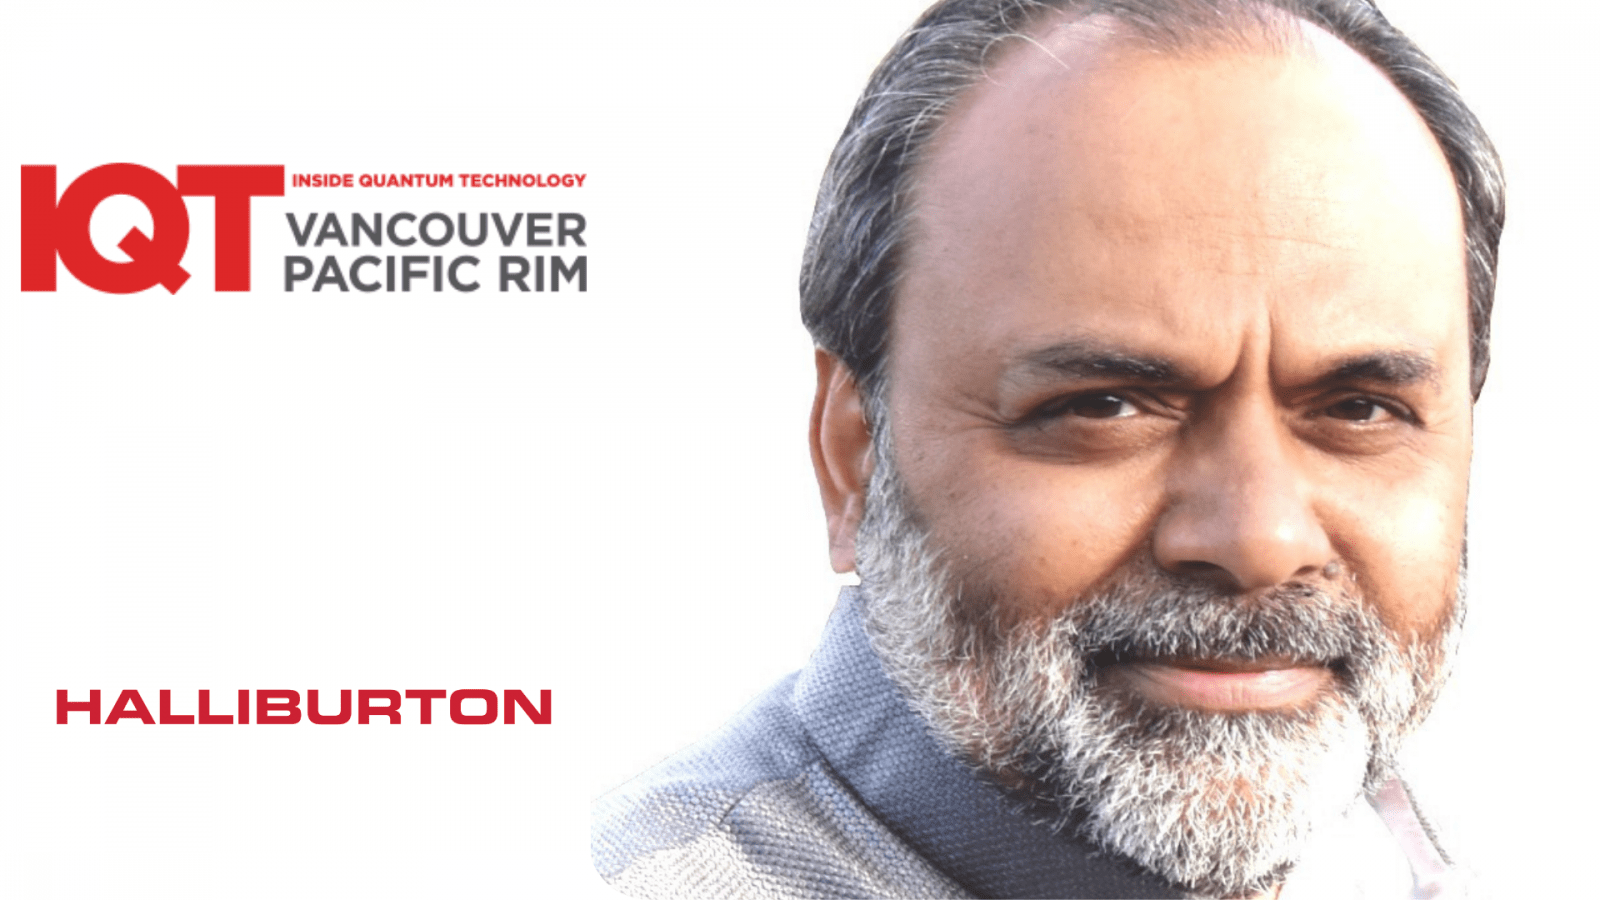 Ο Τεχνολογικός συνεργάτης Halliburton και επικεφαλής επιστήμονας δεδομένων, Satyam Priyadarshy, είναι ομιλητής IQT 2024 Vancouver/Pacific Rim